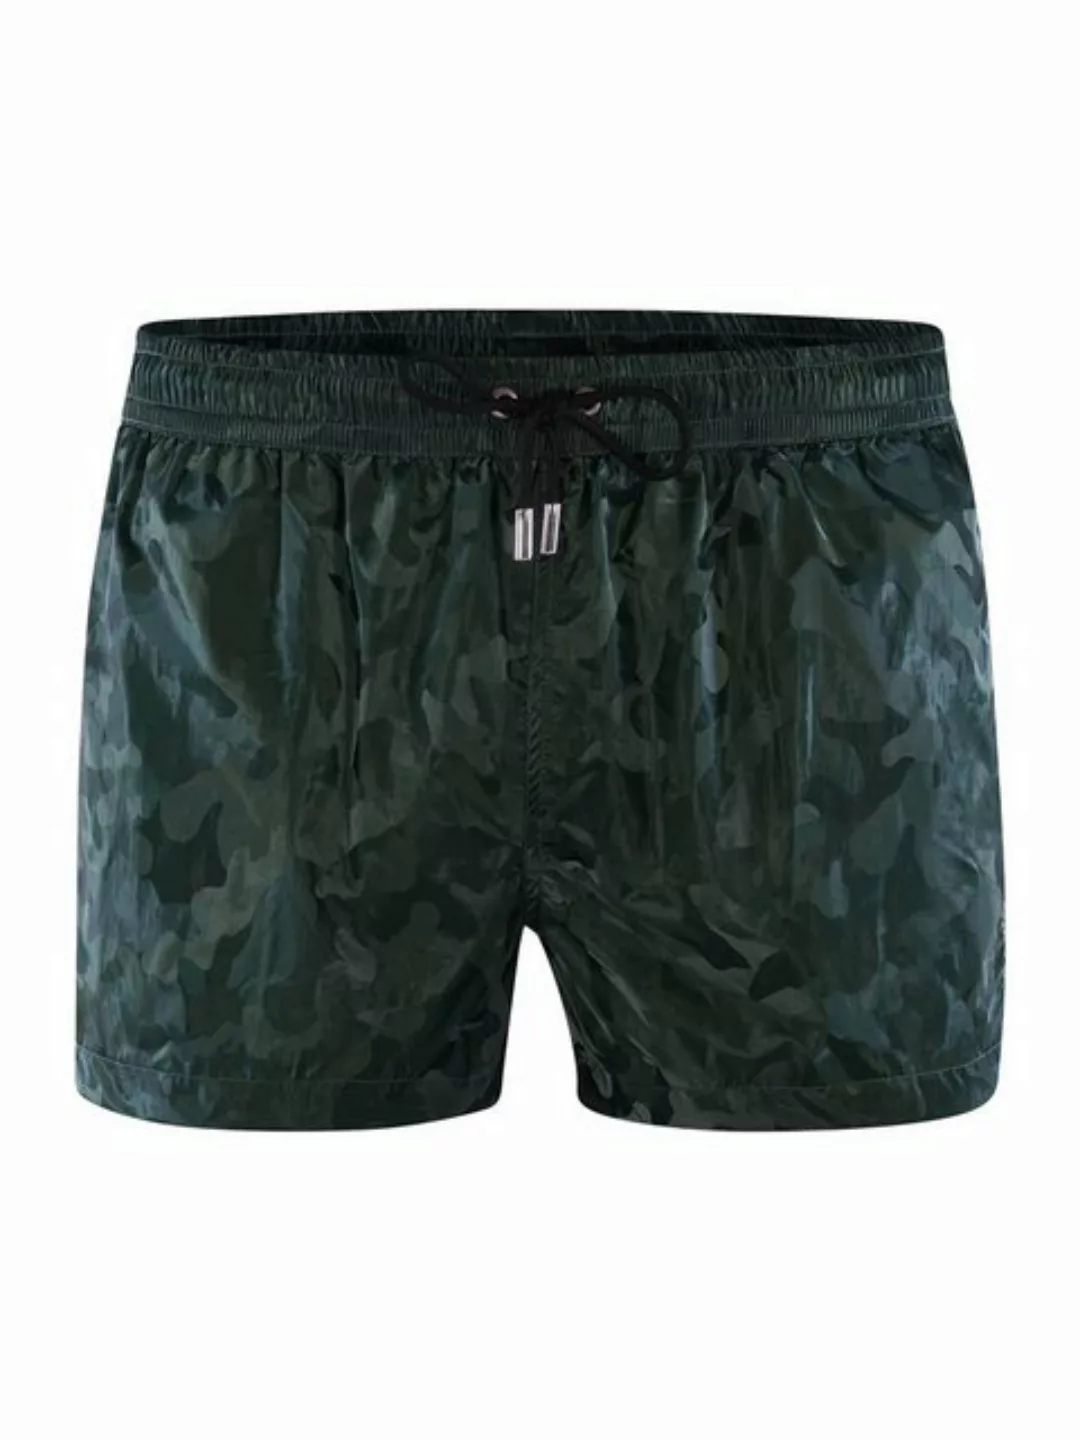 Olaf Benz Shorts BLU2353 Shorts Bermudas Kurze Hose günstig online kaufen